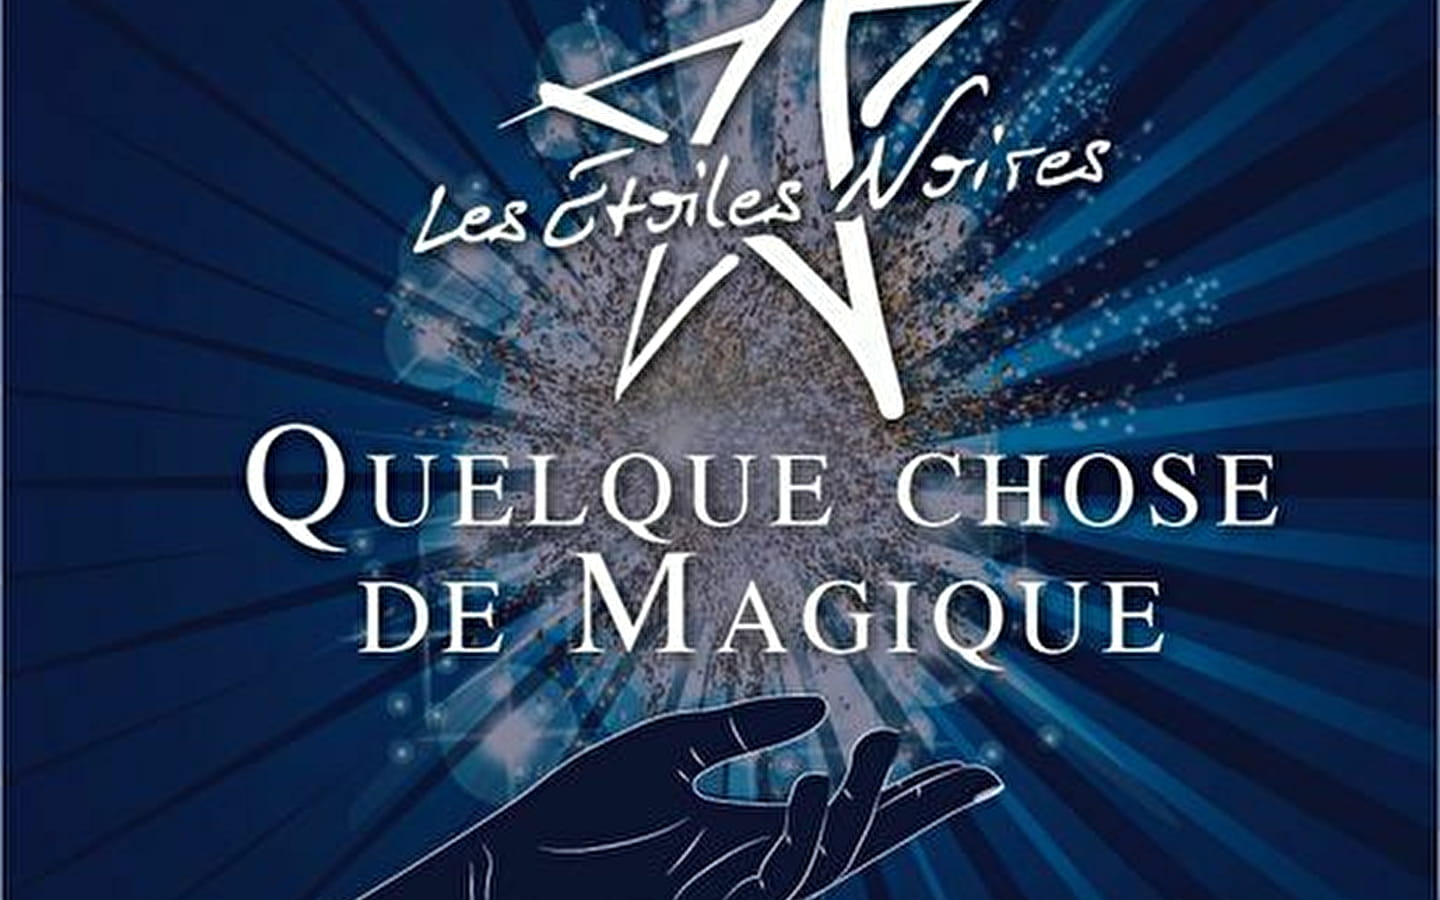 Show - Les Étoiles Noires: Iets magisch